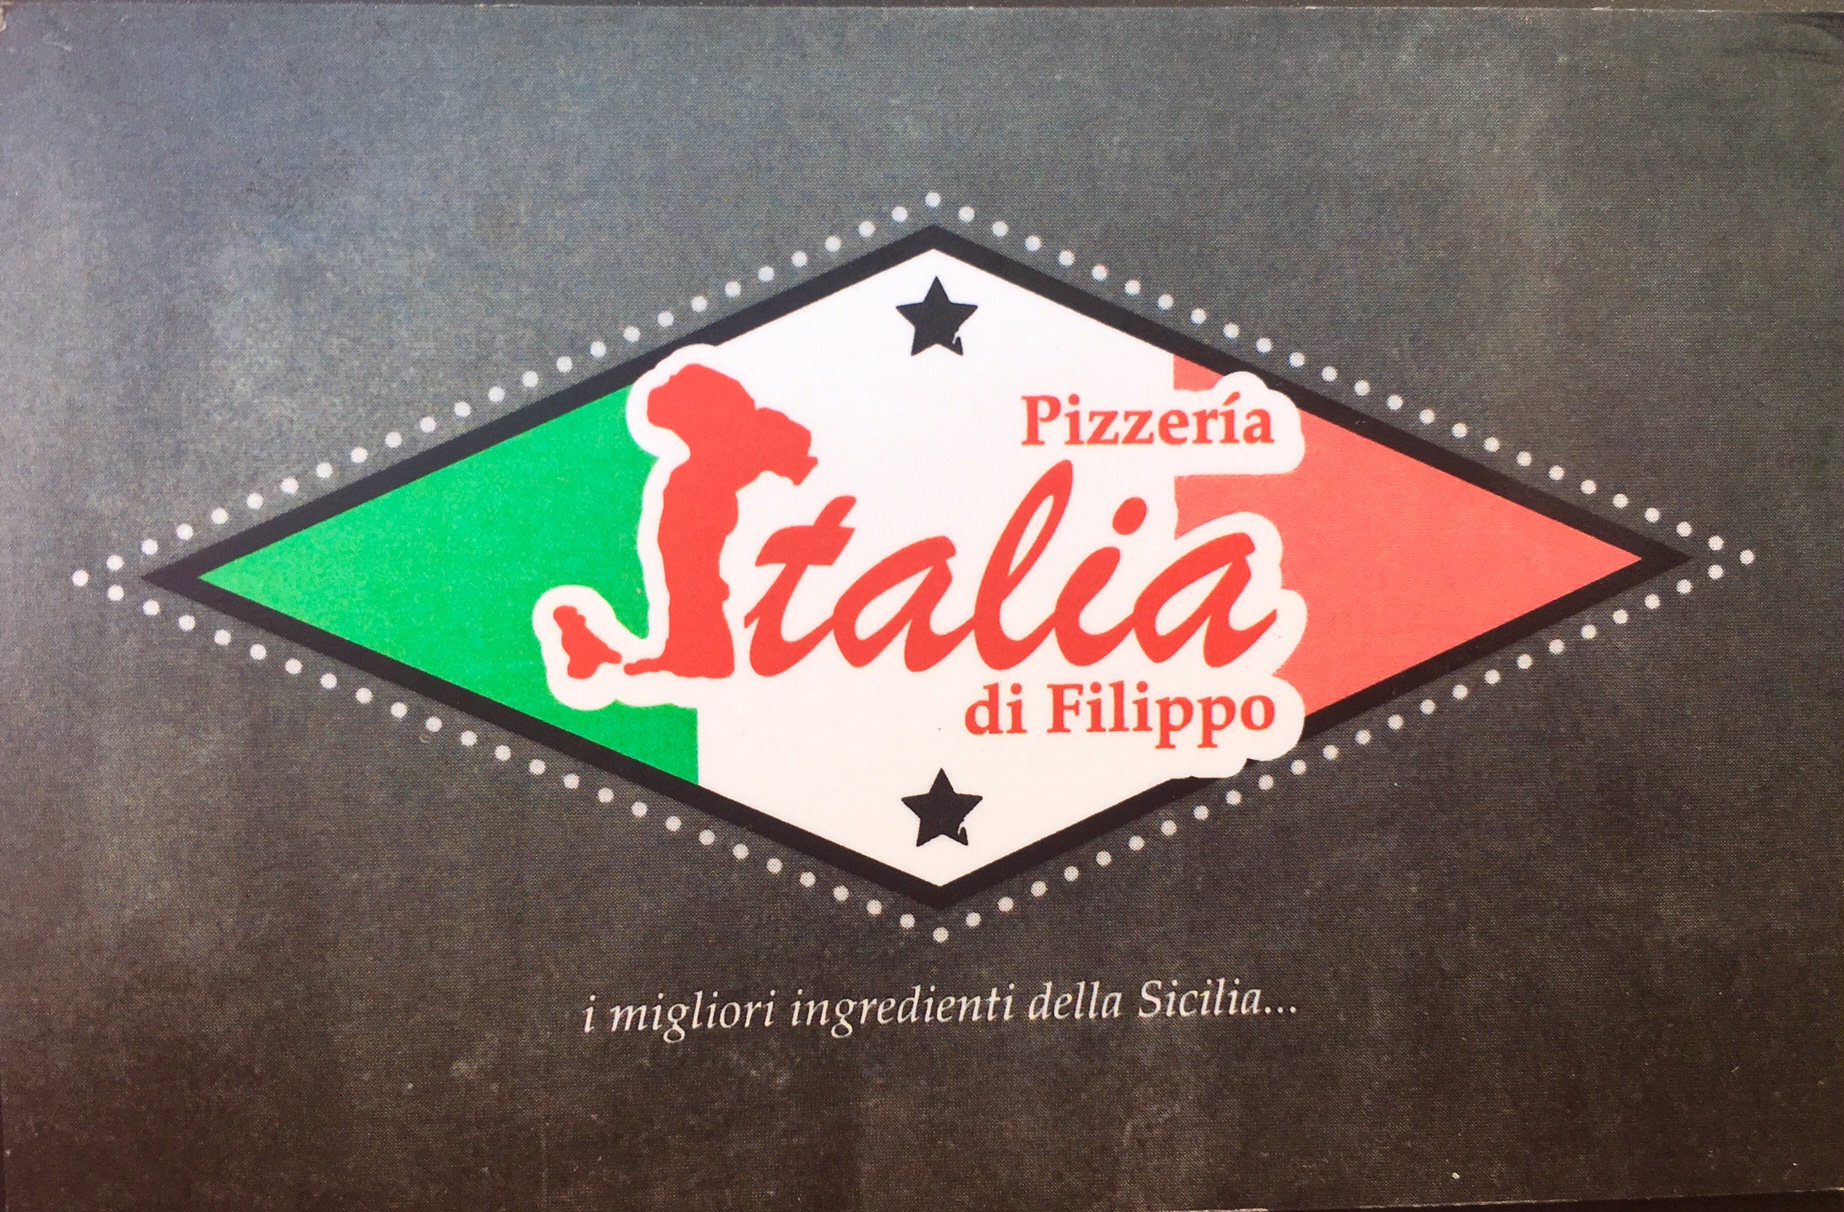 Images Pizzería Italia di Filippo